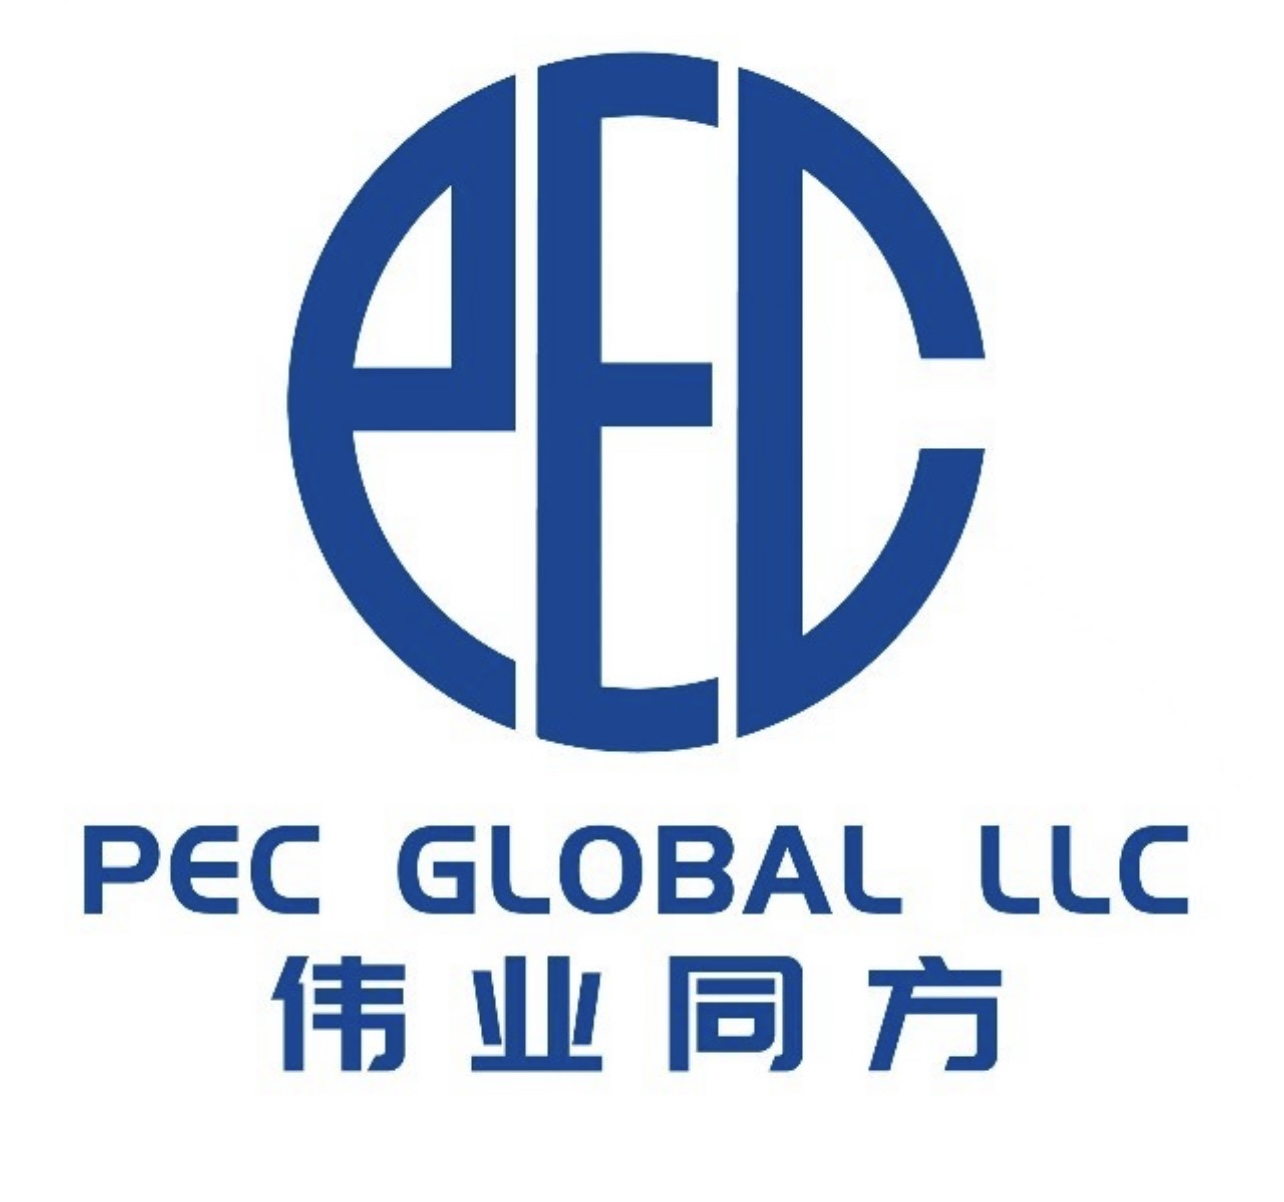 PEC Global LLC